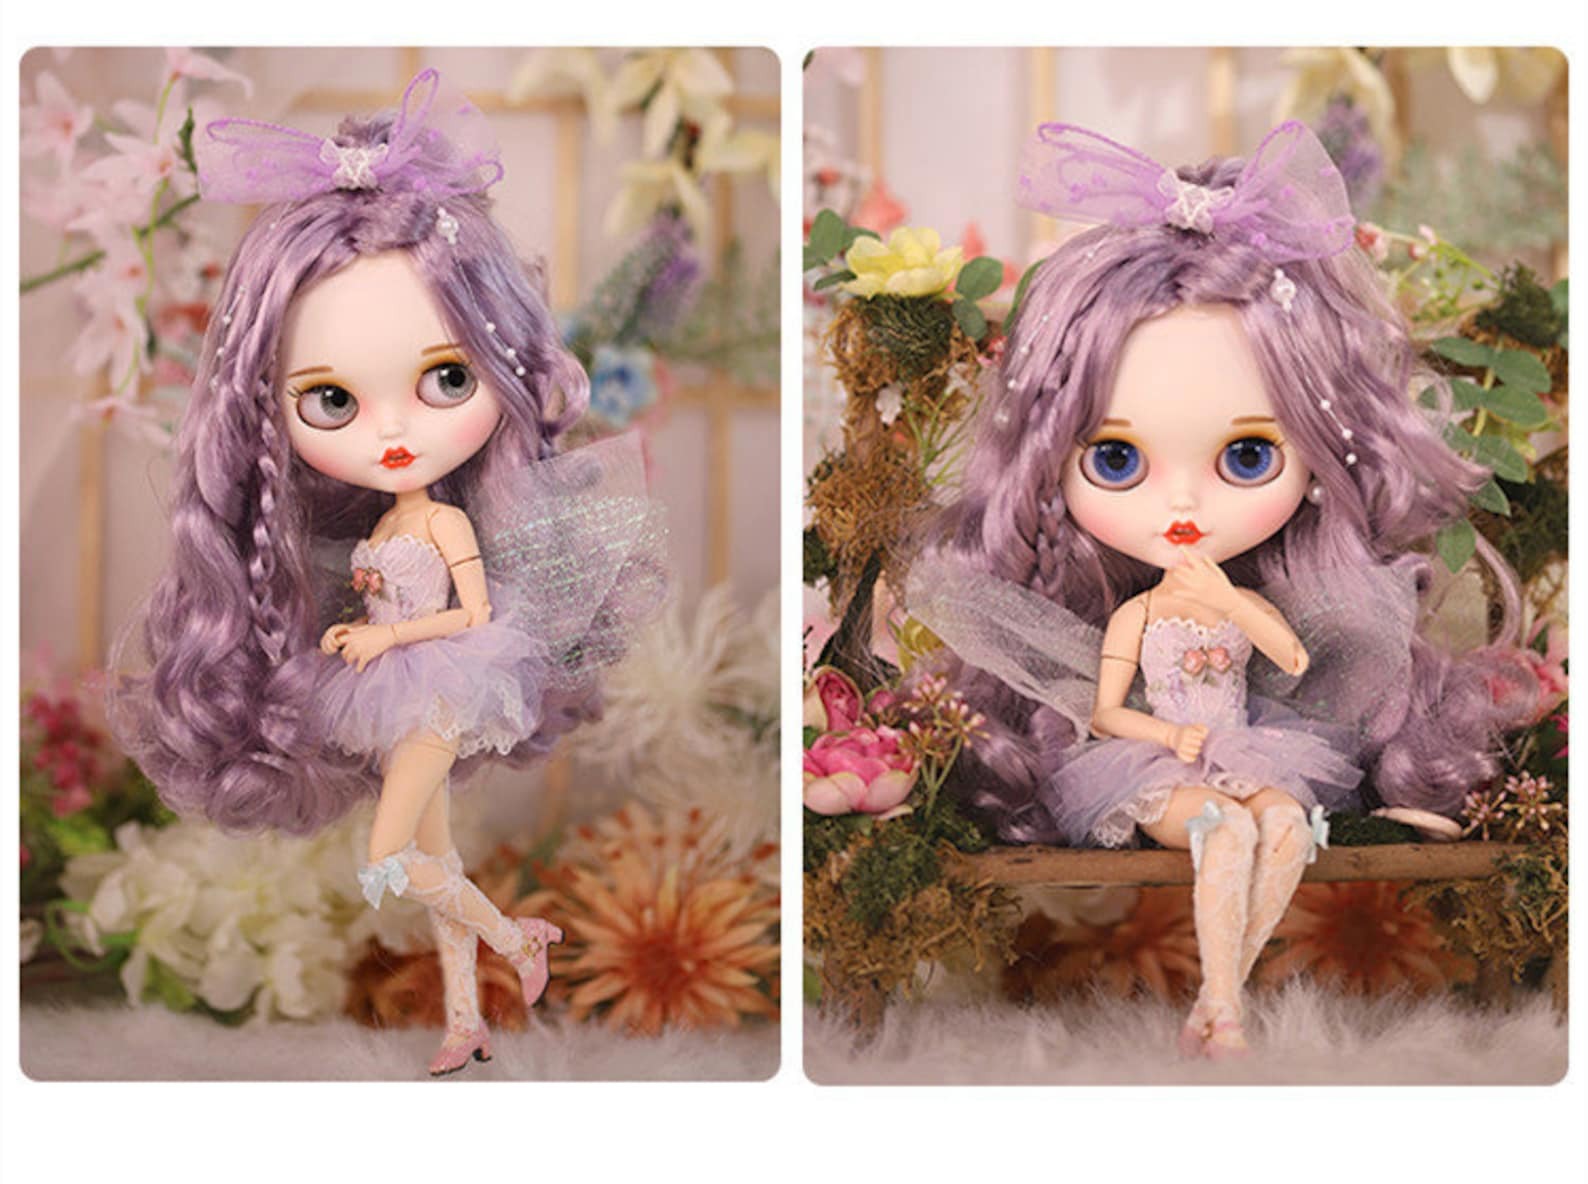 Fee Elfie – Premium Custom Neo Blythe Pop met paars haar, witte huid en mat lachend gezicht